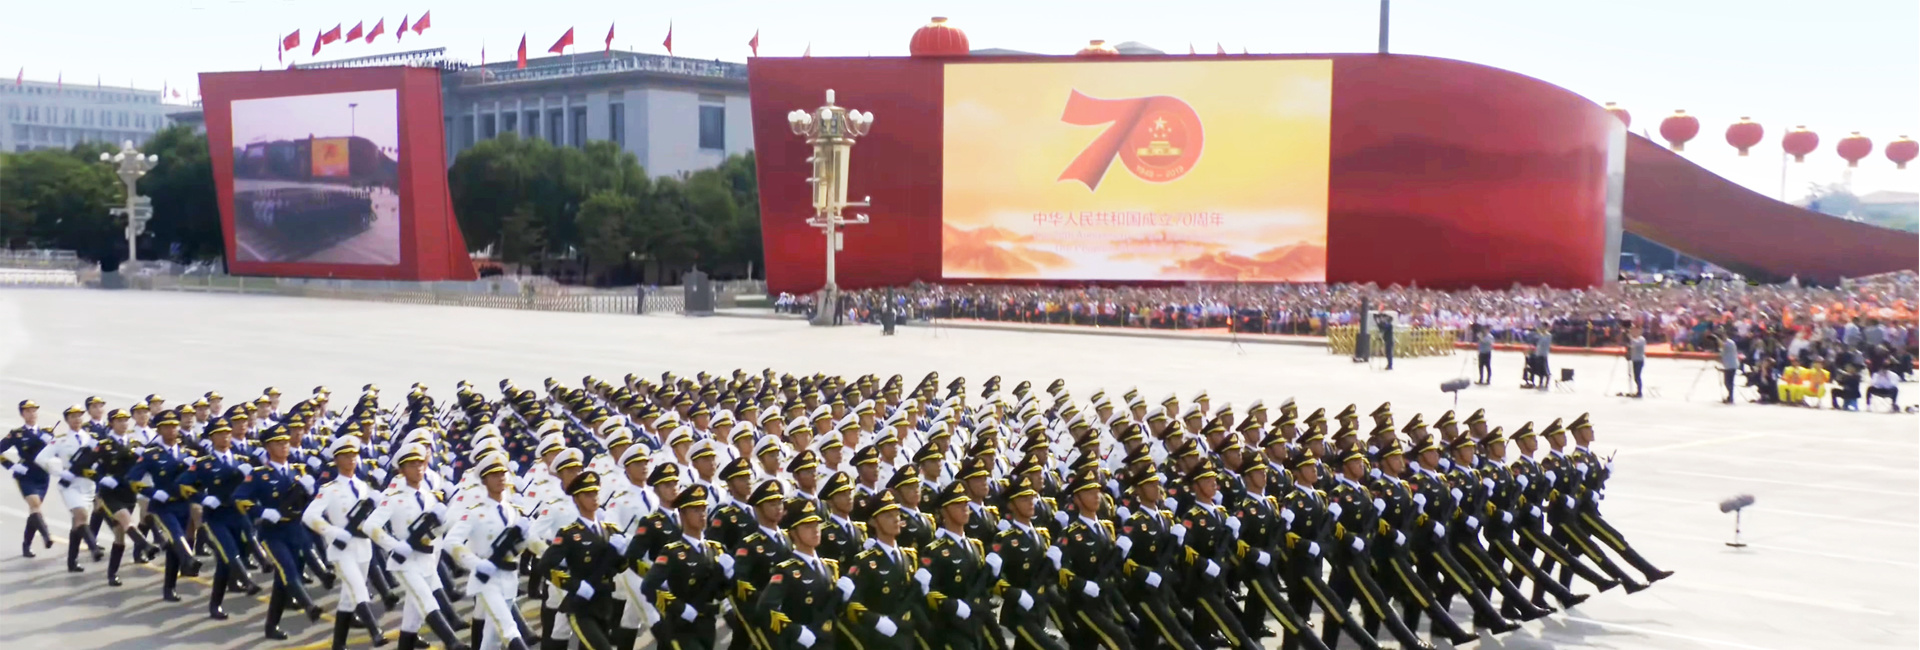 庆祝中华人民共和国成立70周年大型活动视觉背景